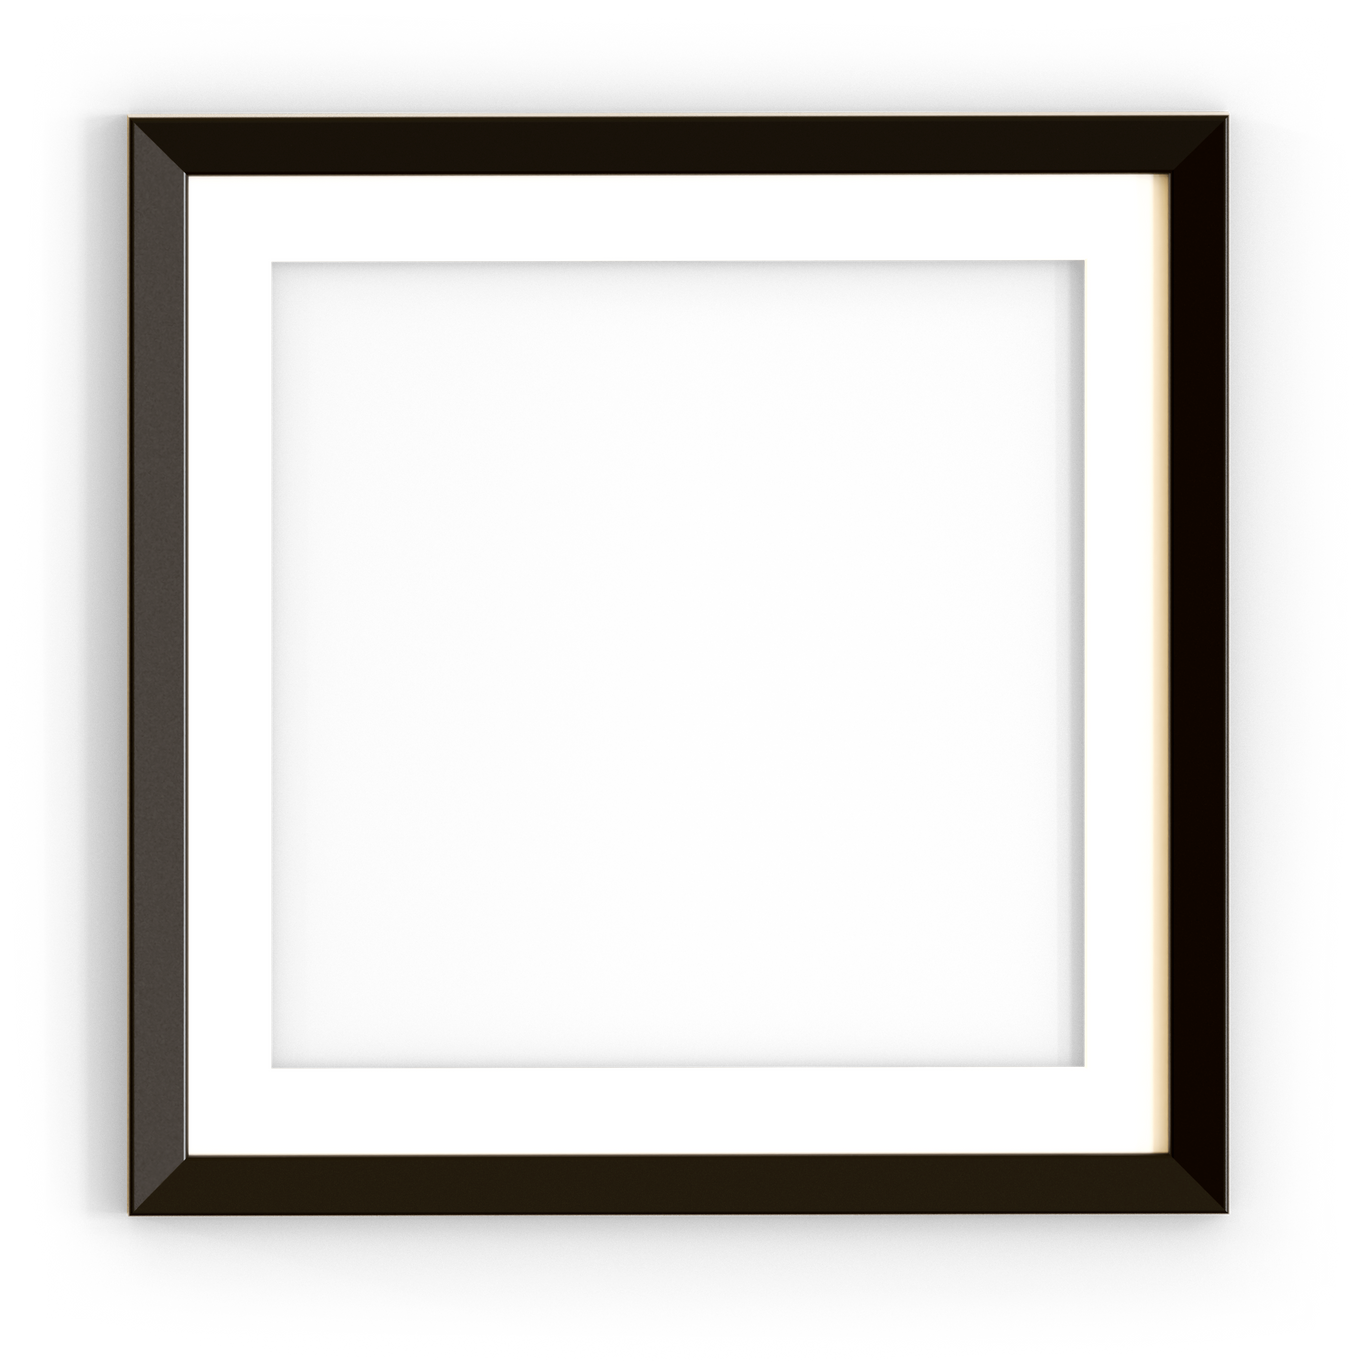 Square Black Iron Frame Mockup Isolated